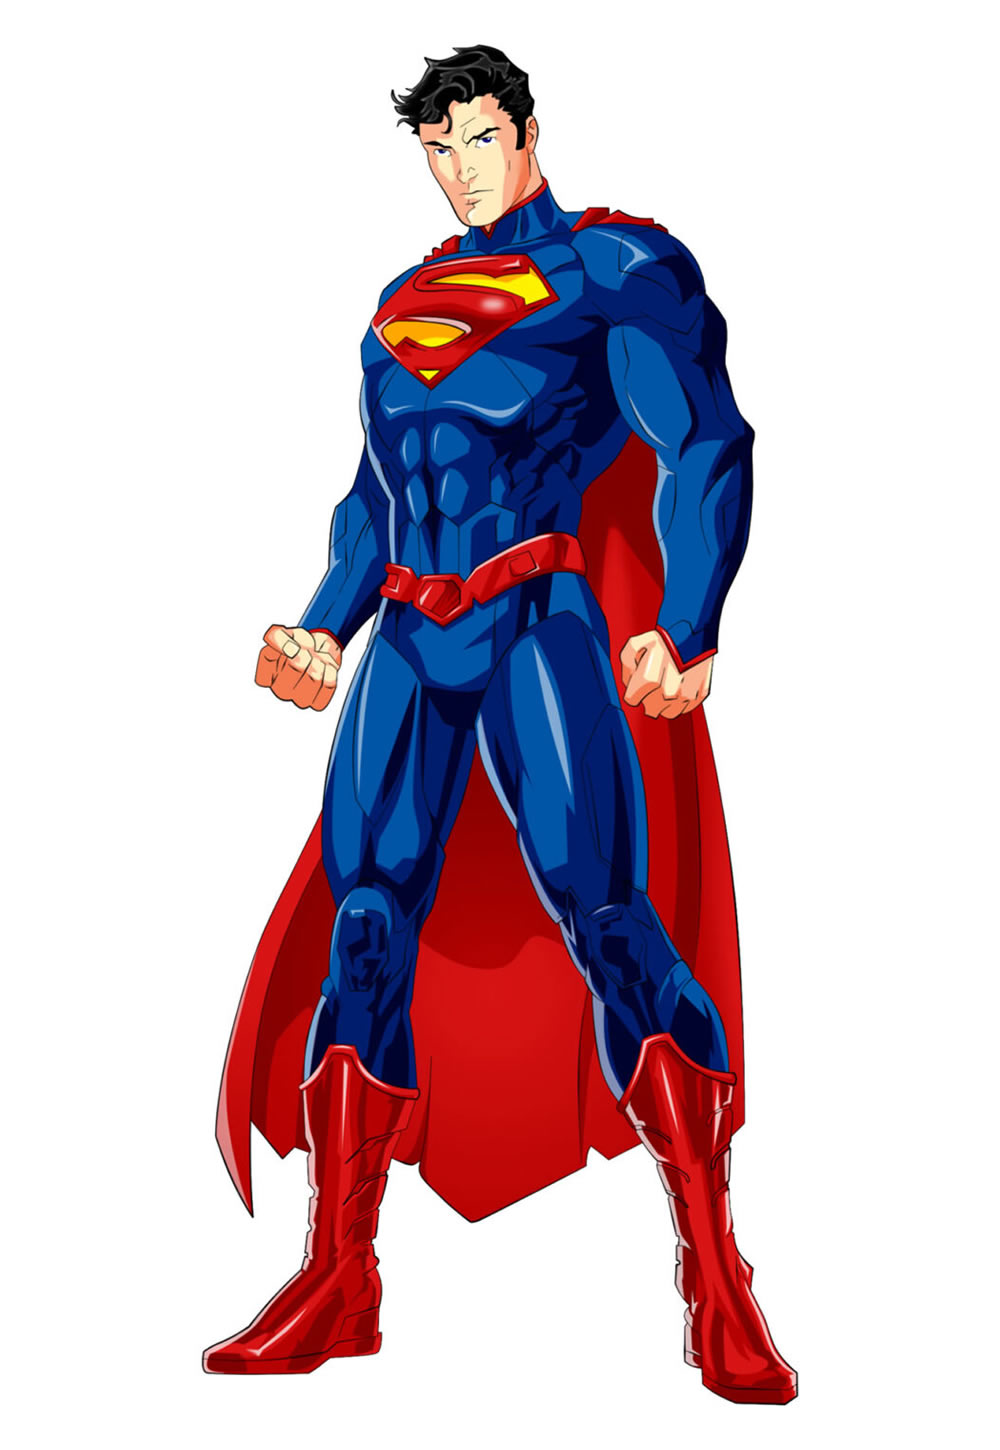 Imagem do Super-Homem